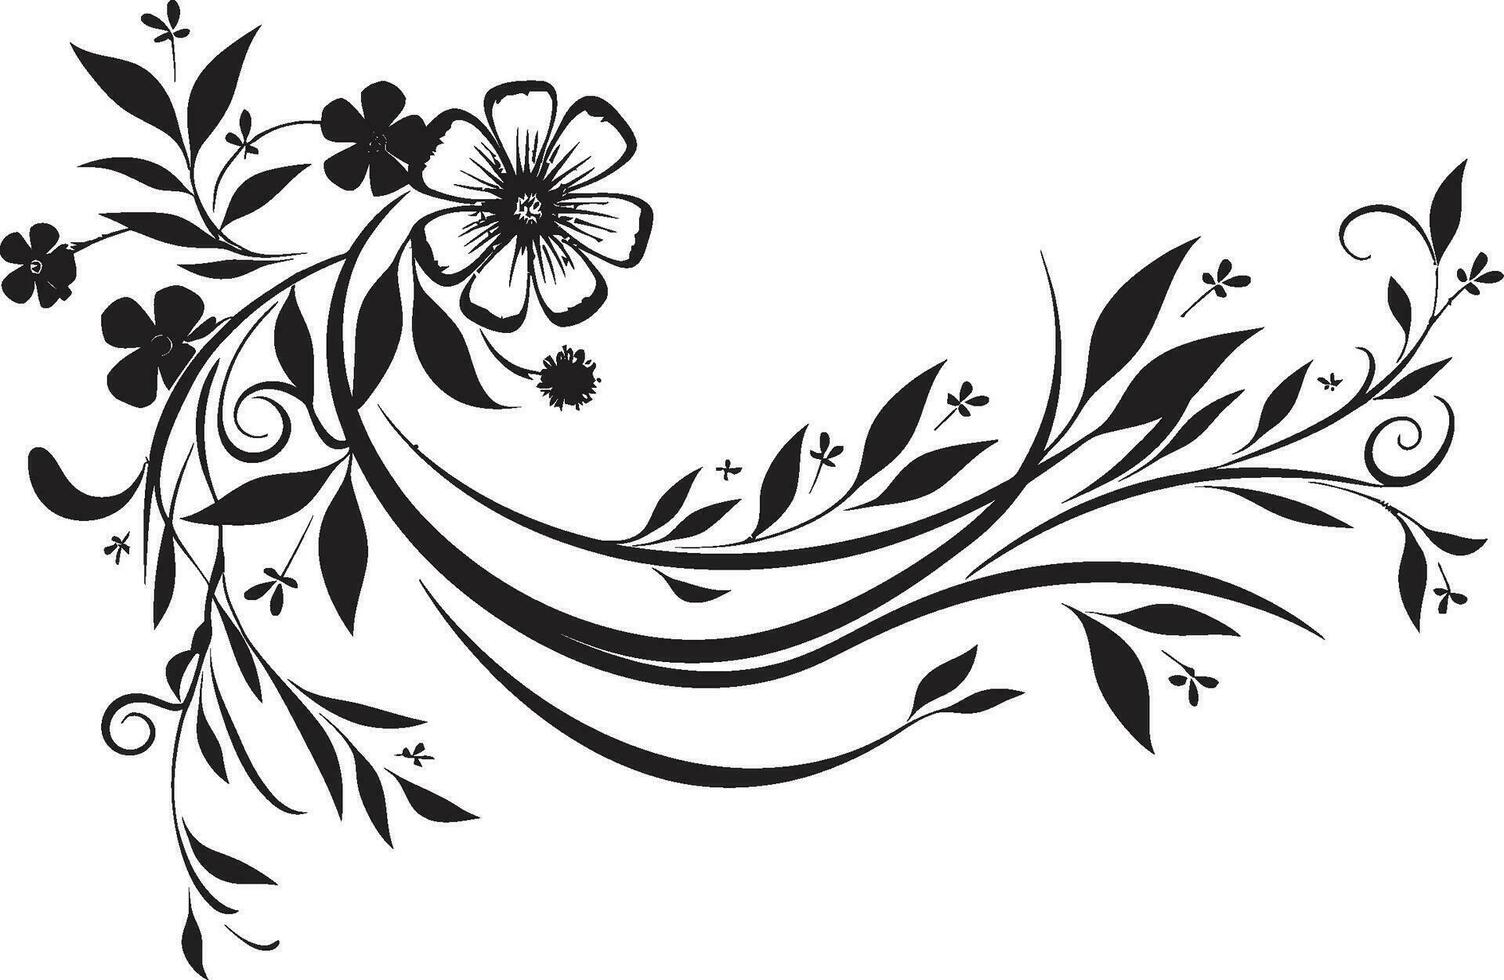 inchiostro noir botanico odissea Vintage ▾ nero emblema schizzi elegante floreale sussurra monotono vettore iconico disegni